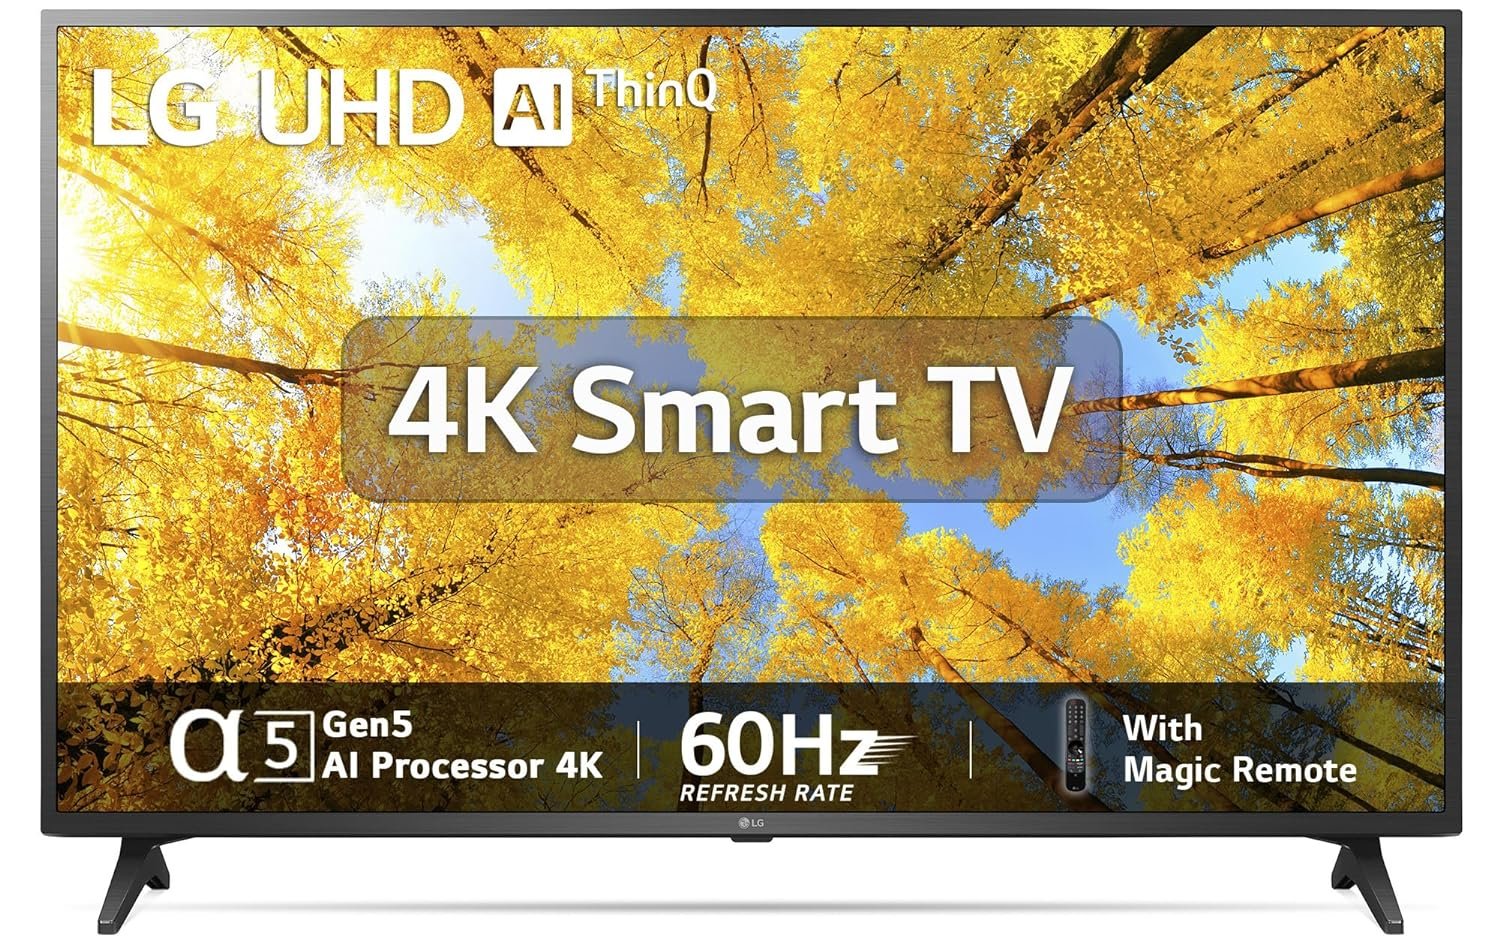 LG 139 cm (55 inches) 4K Ultra HD Smart LED TV